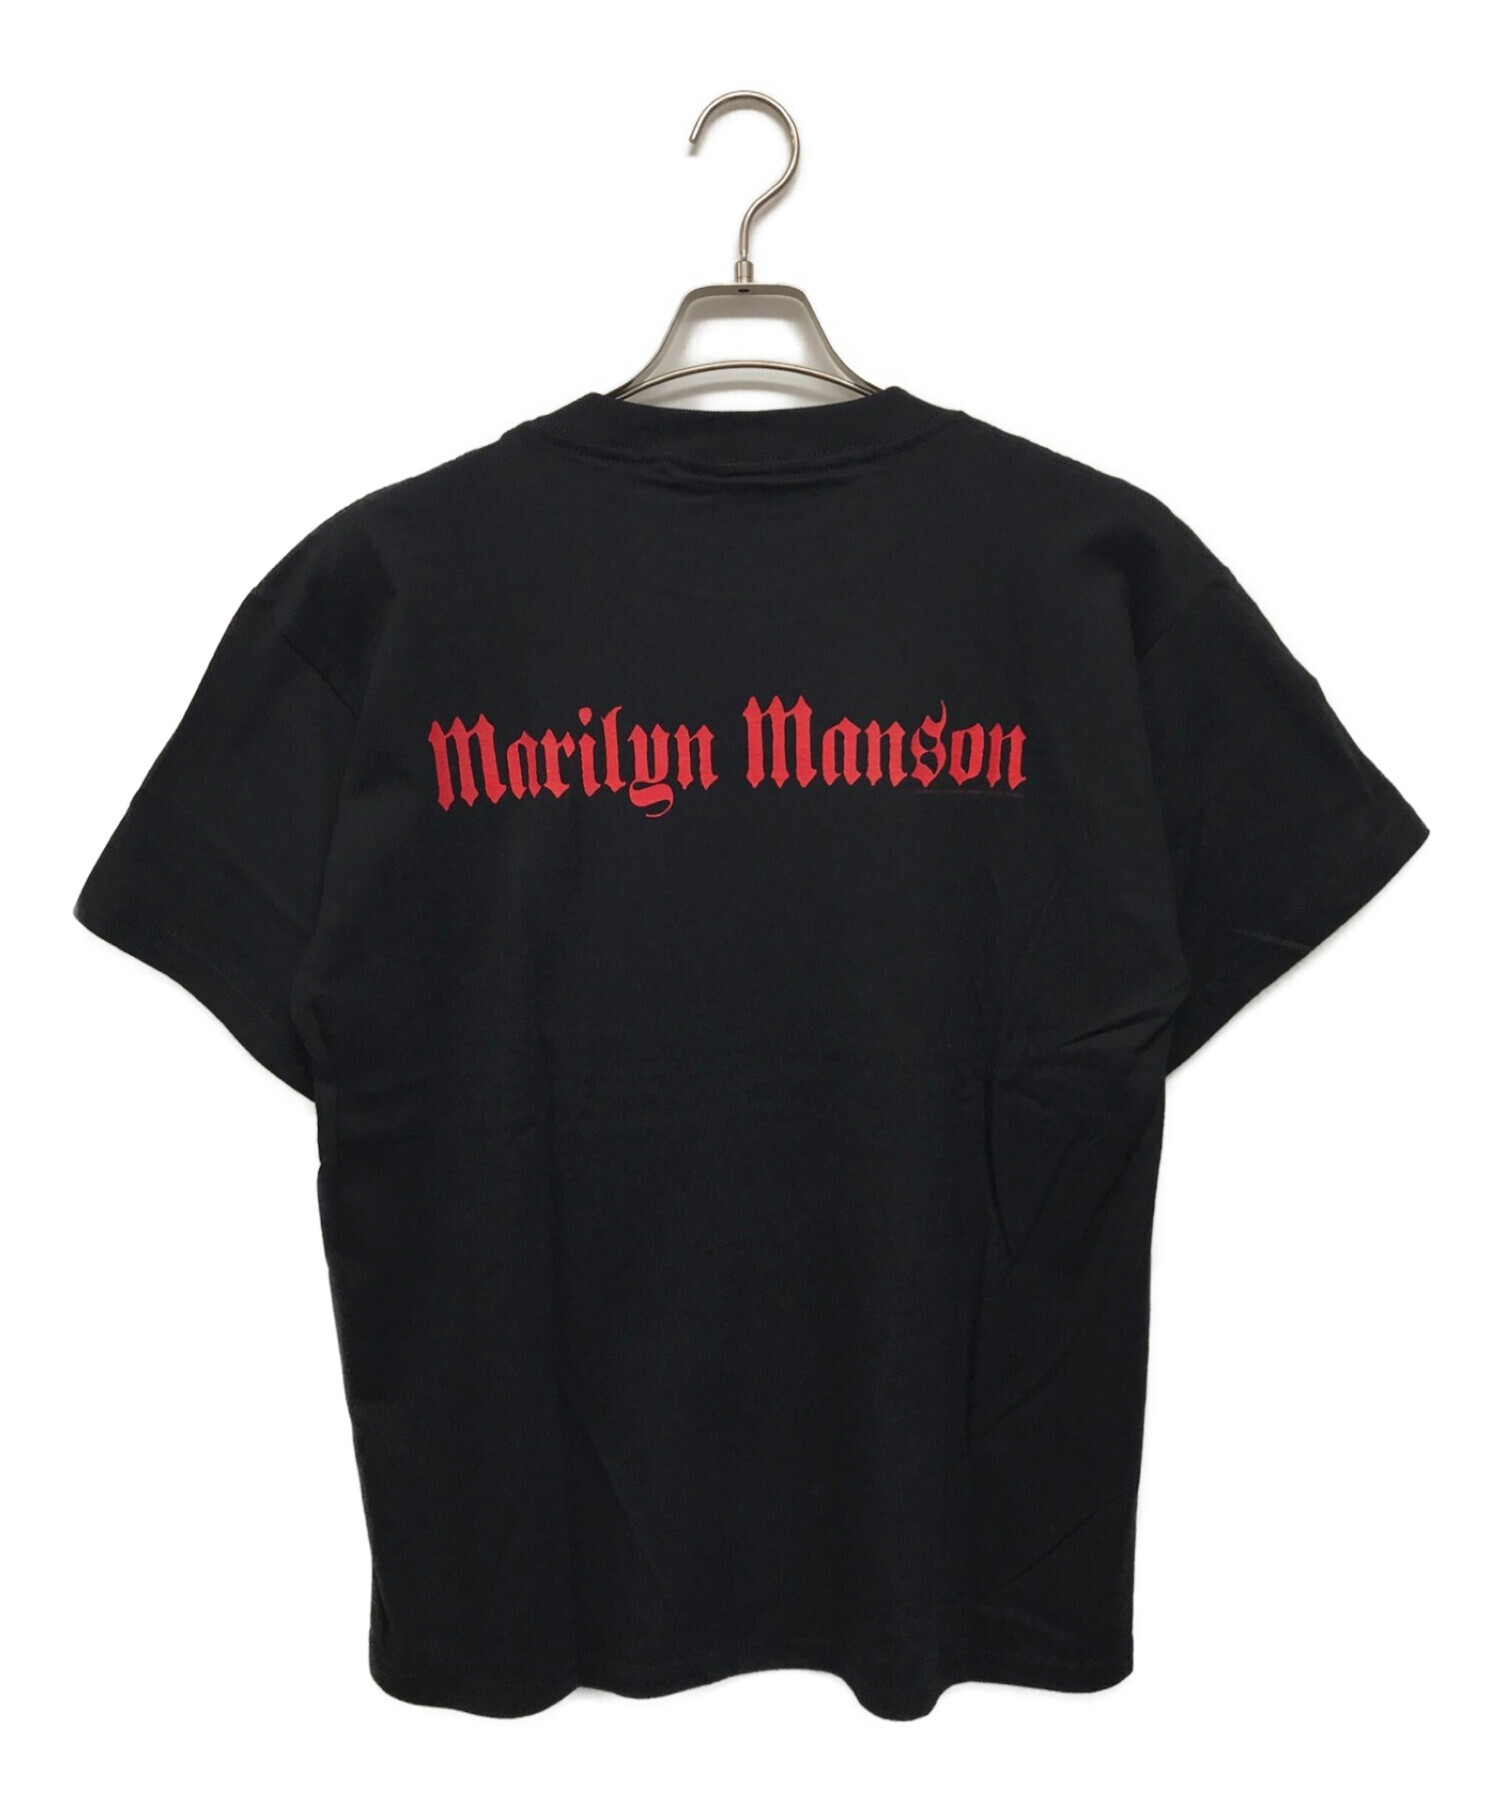 多少の誤差はご了承くださいbeliever マリリンマンソン marilyn manson 2000年代